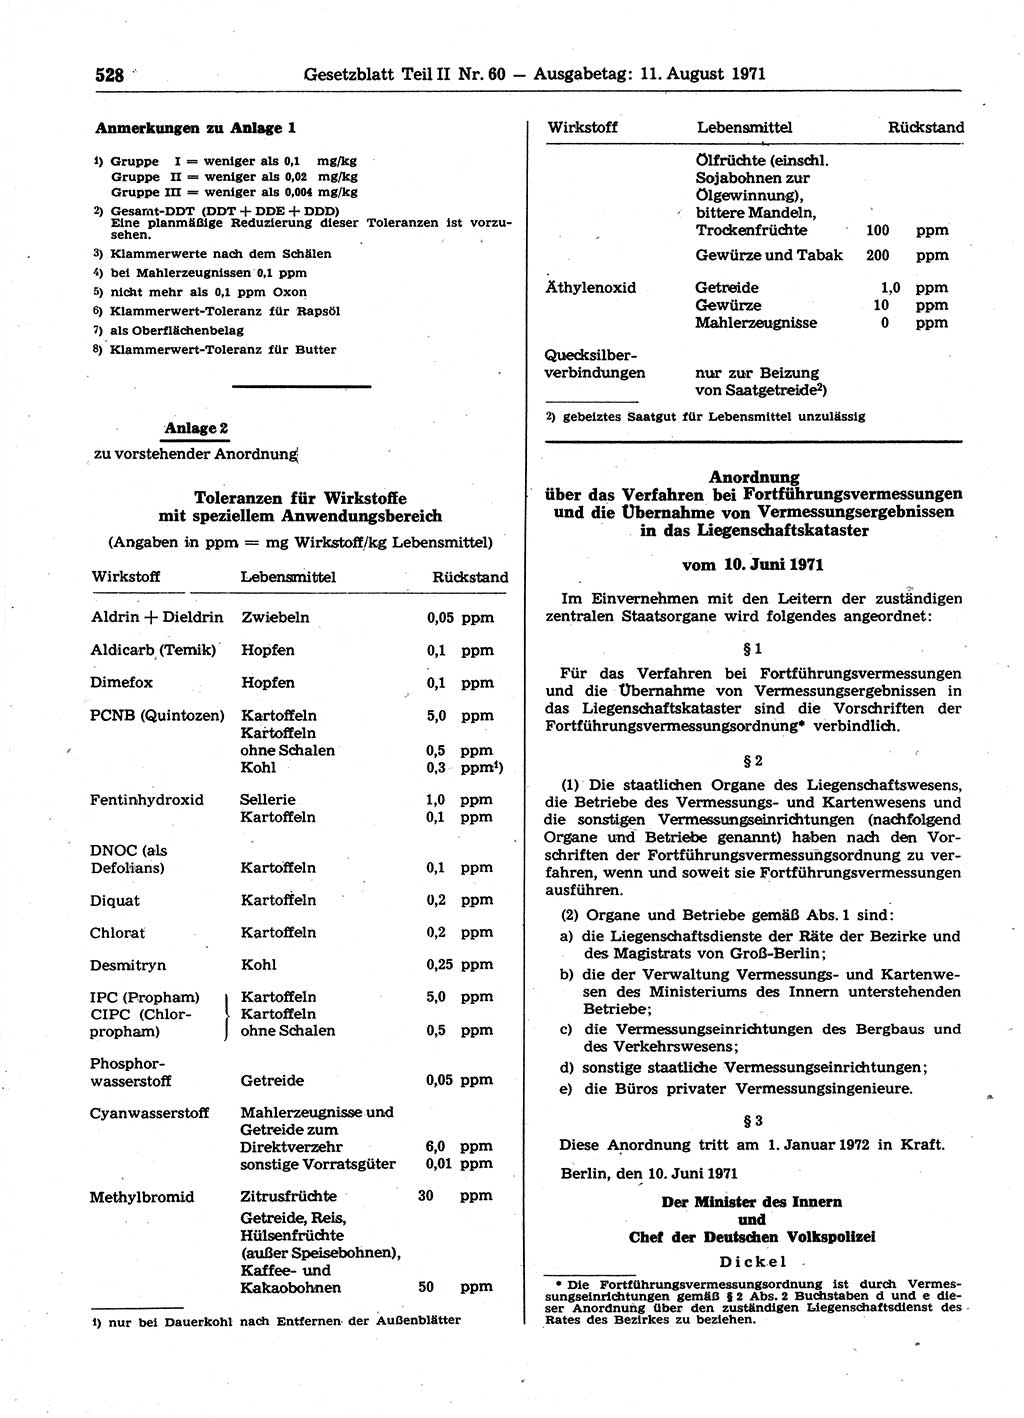 Gesetzblatt (GBl.) der Deutschen Demokratischen Republik (DDR) Teil ⅠⅠ 1971, Seite 528 (GBl. DDR ⅠⅠ 1971, S. 528)